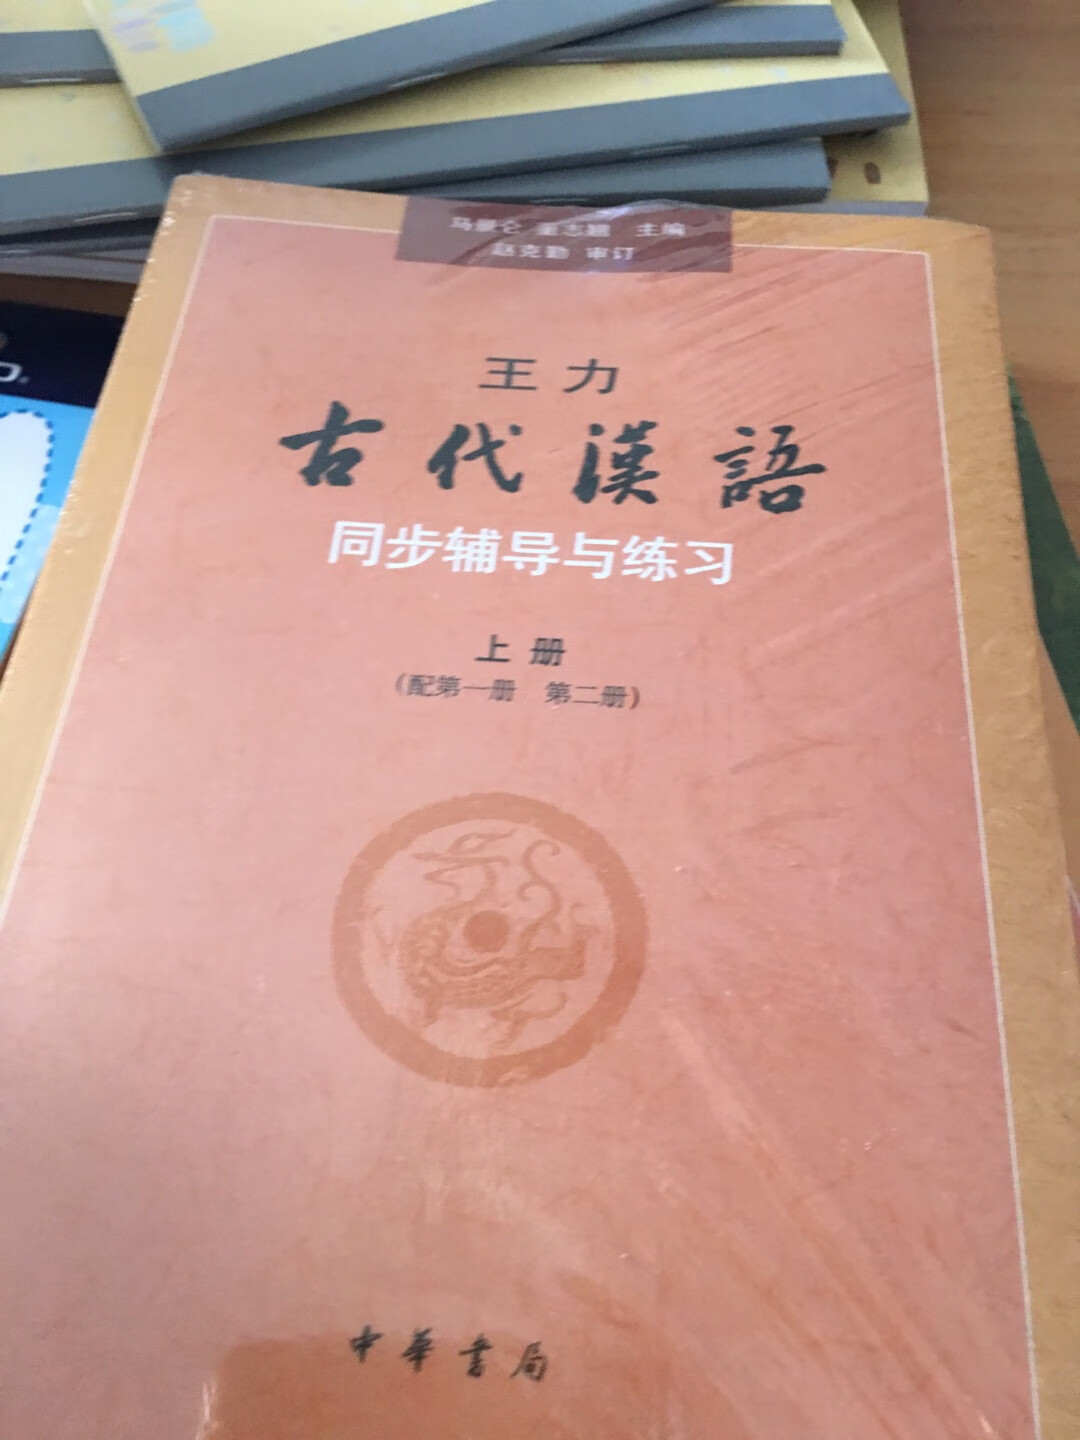 这个古汉语书看了很久，搞活动的时候才入手。里面的内容说的非常细，值得拥有。